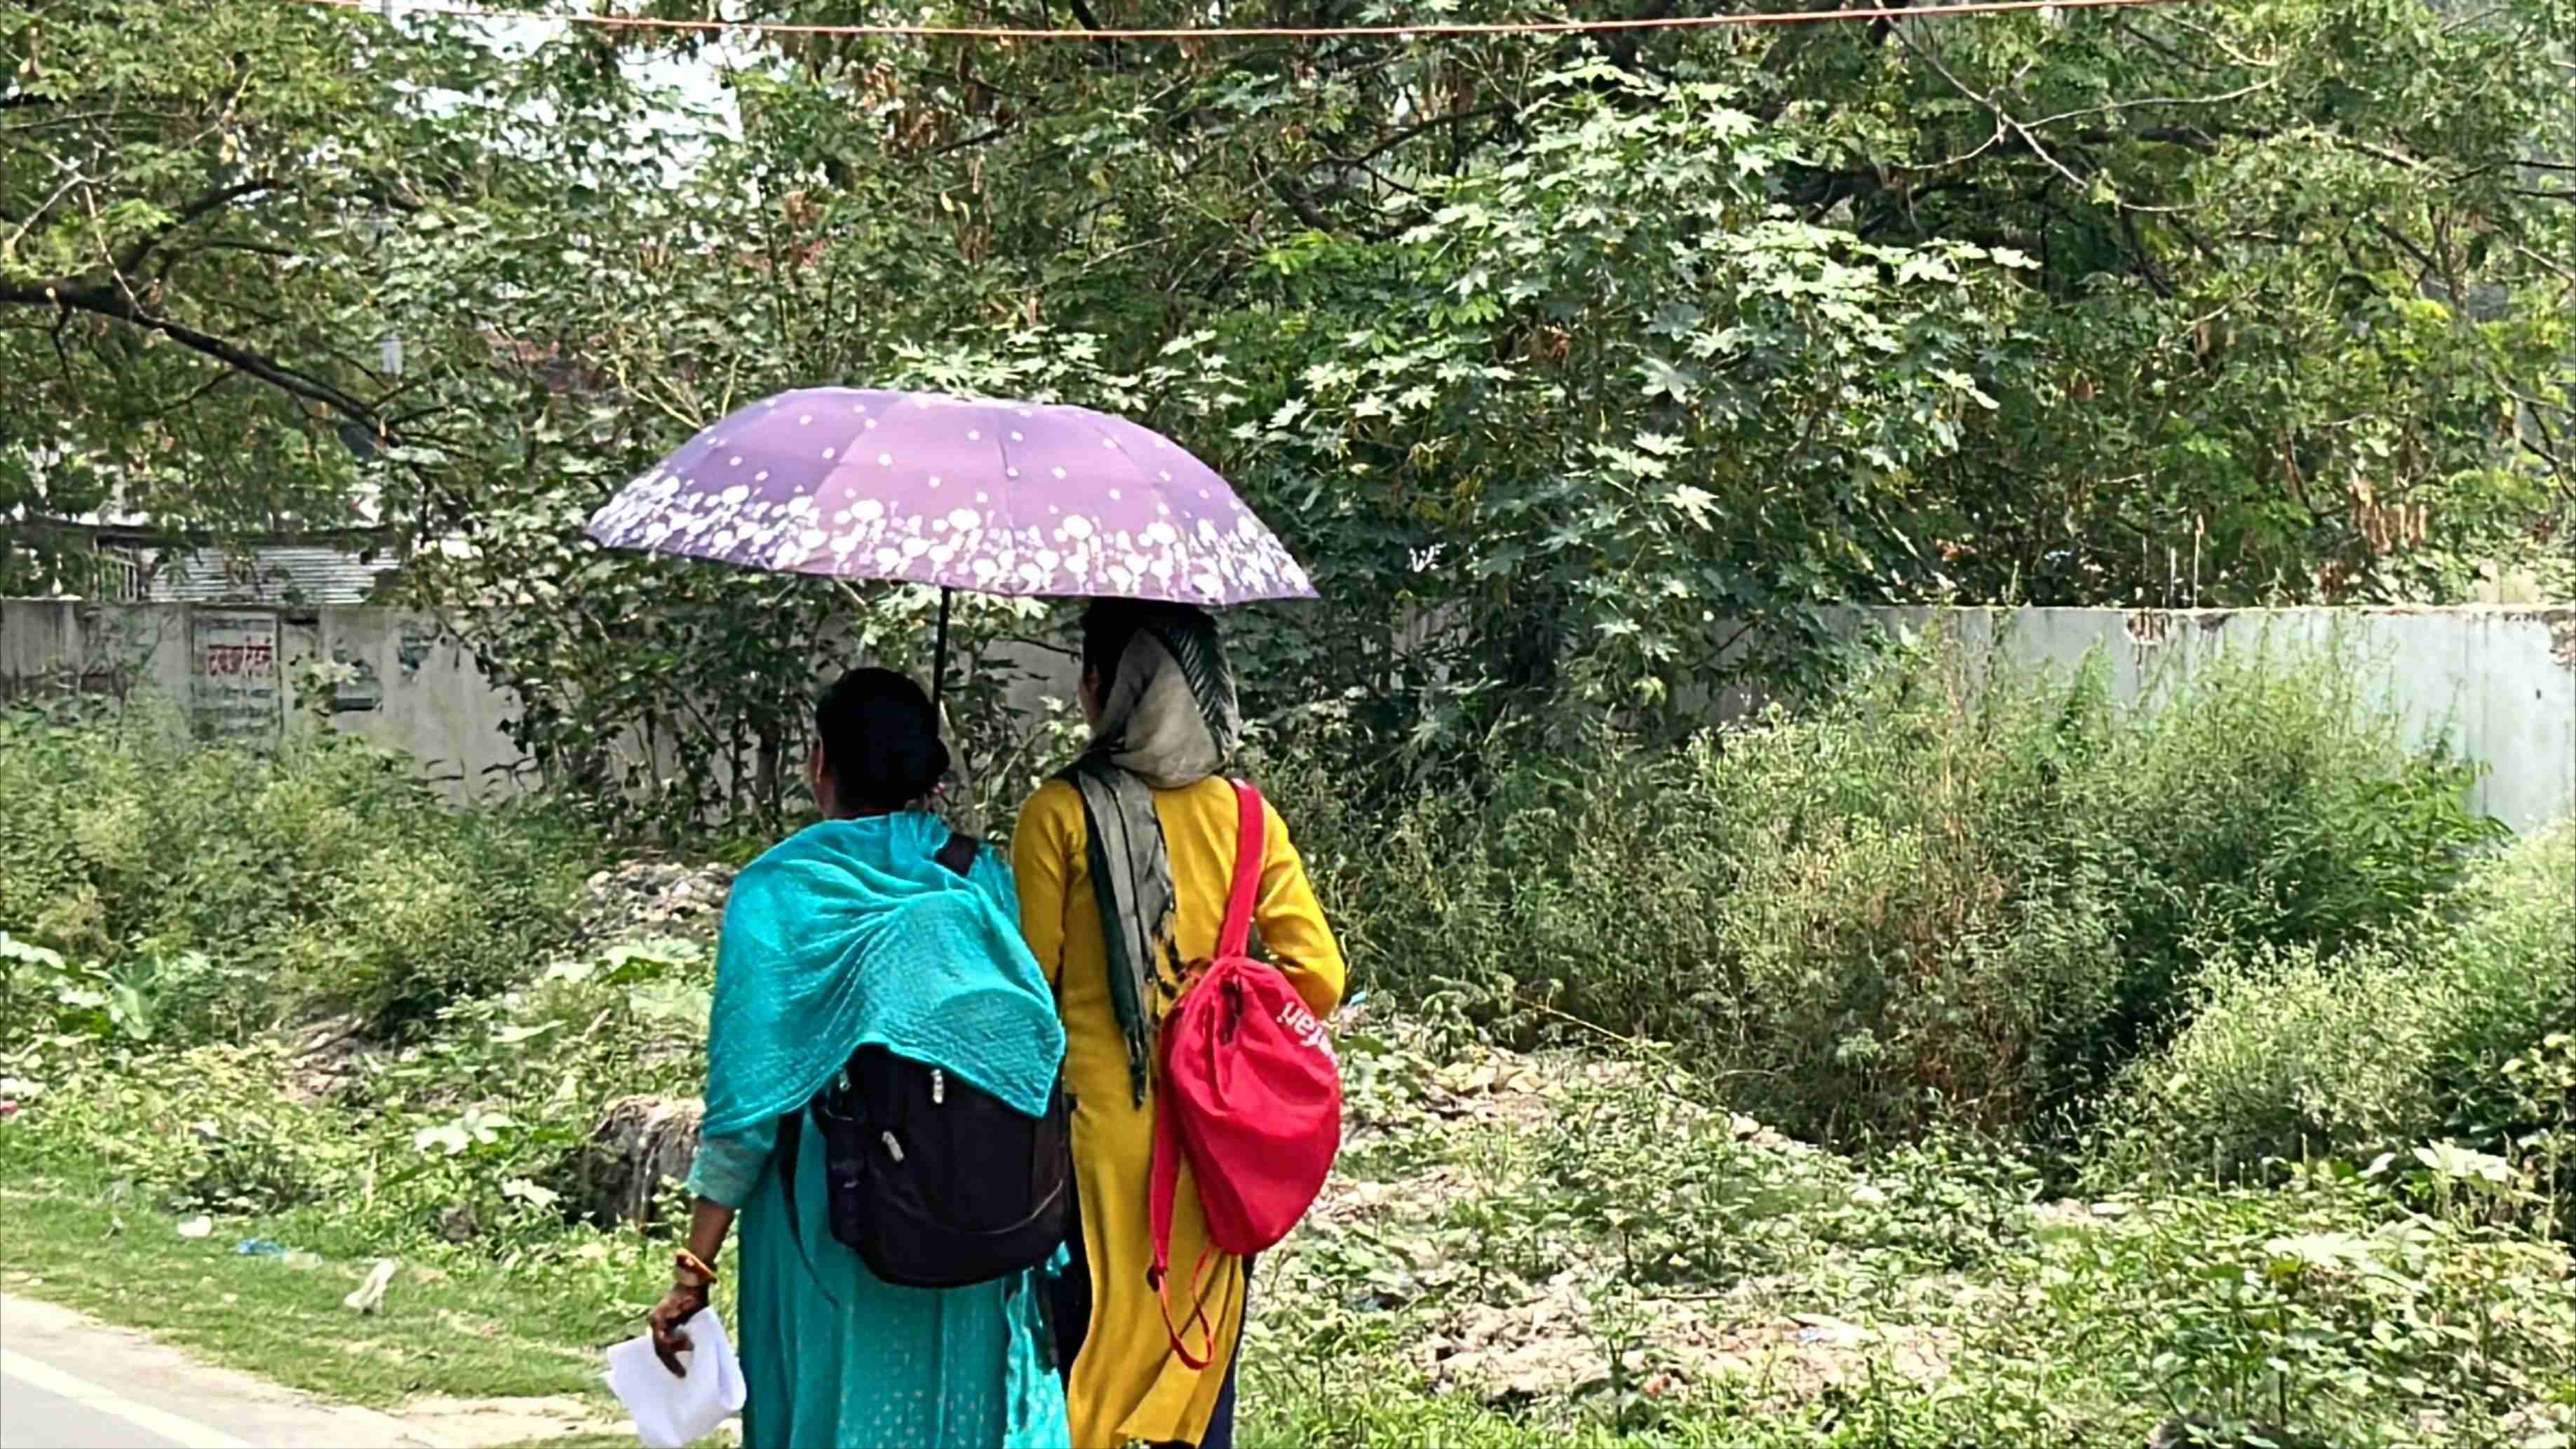 गर्मी से बचने के लिए छाता का इस्तेमाल करतीं छात्राएं.